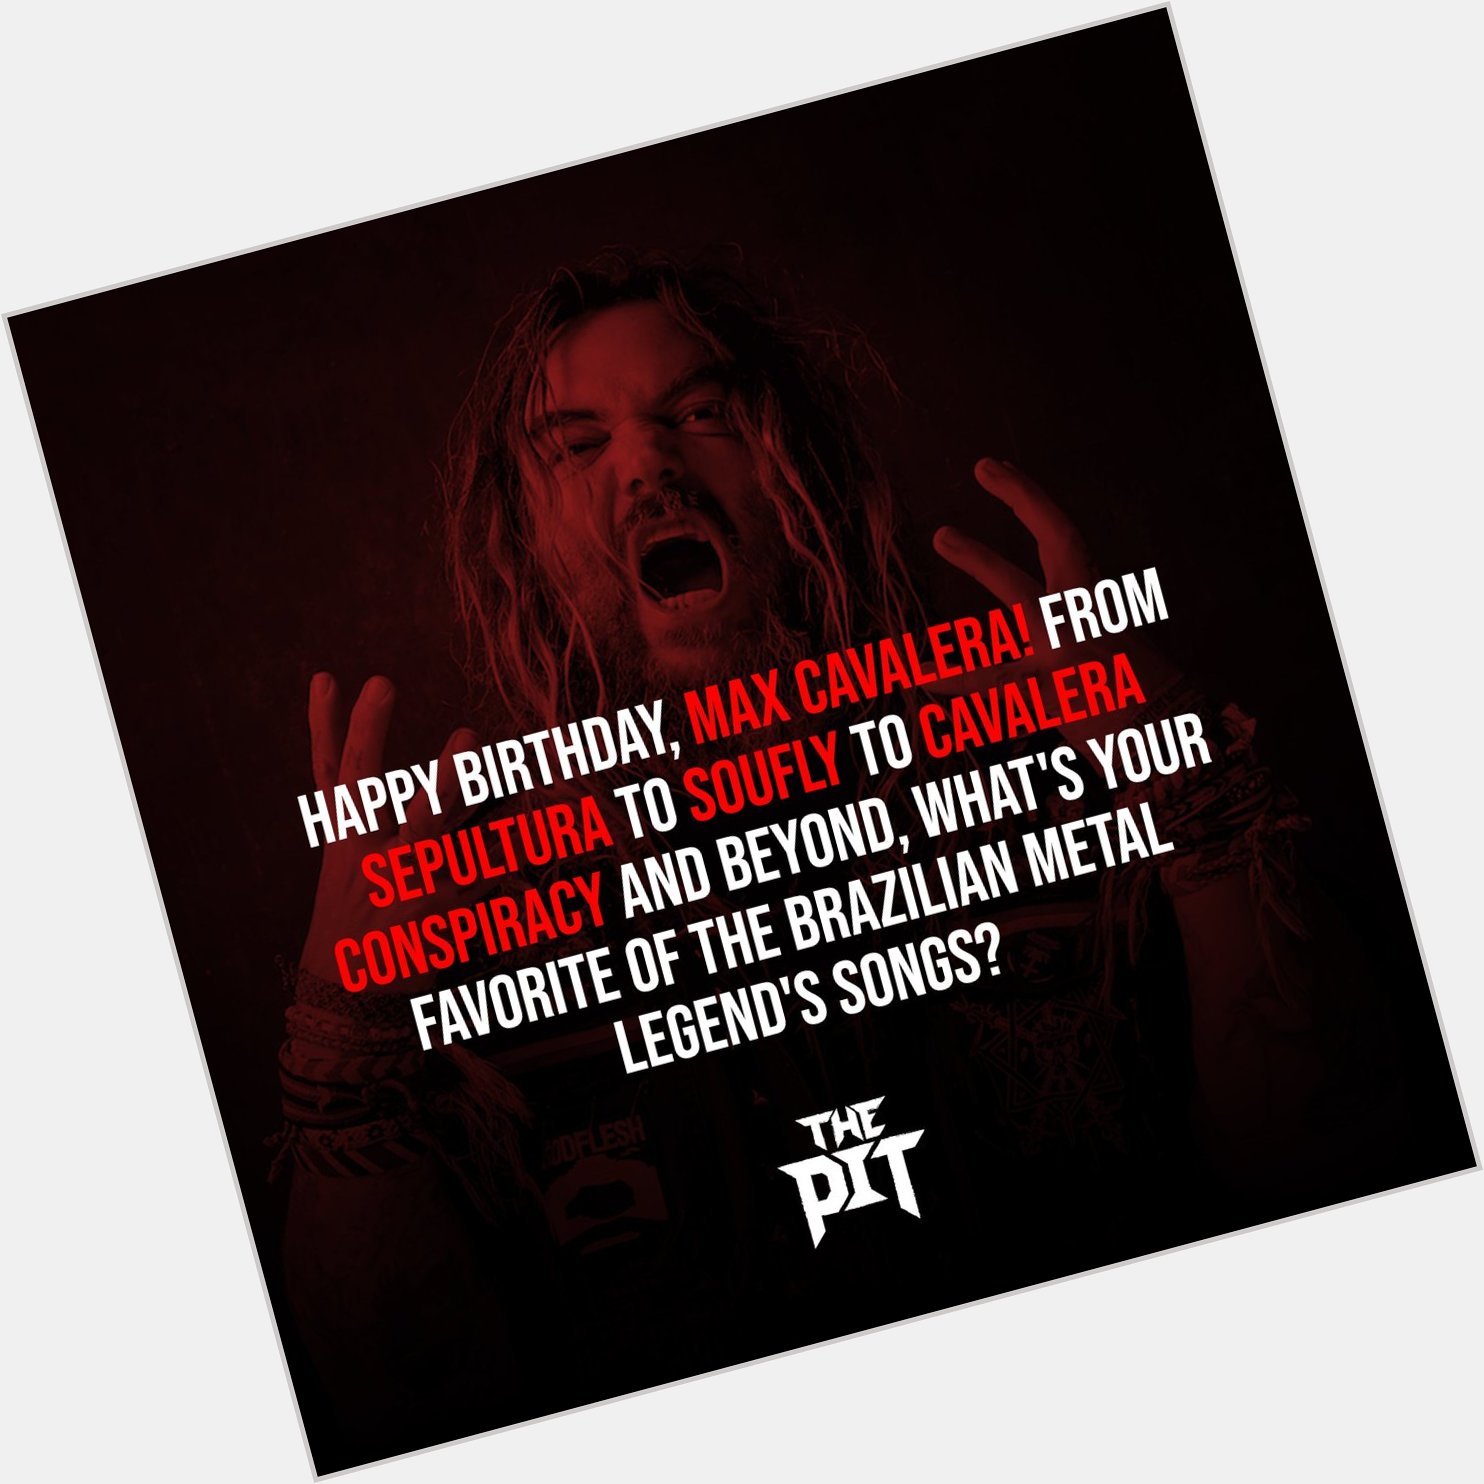 Happy birthday, Max Cavalera! 